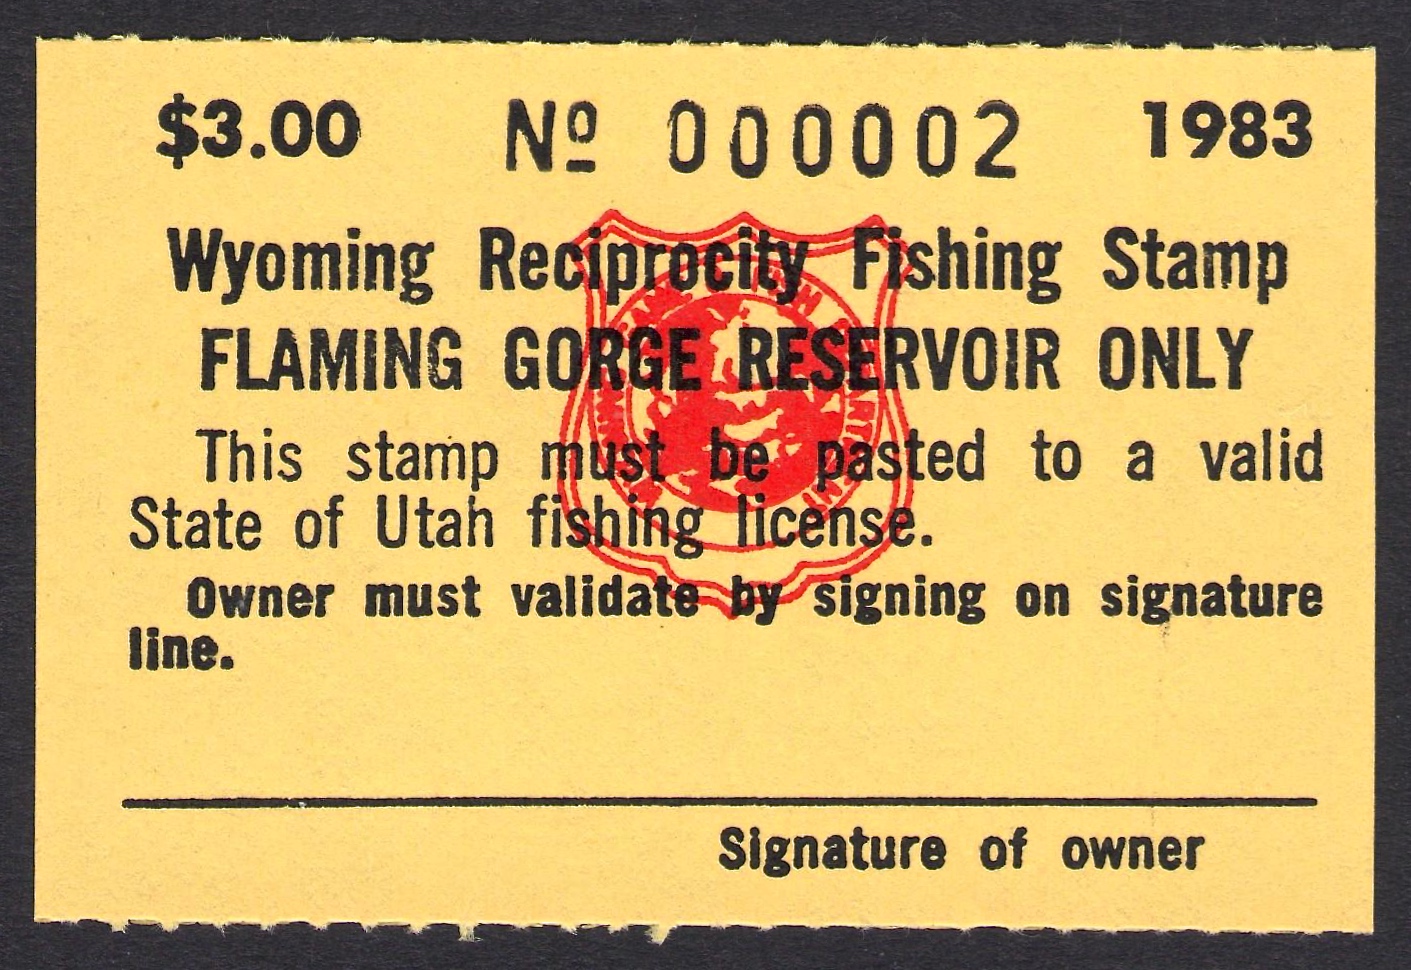 1983 Wyoming Flaming Gorge